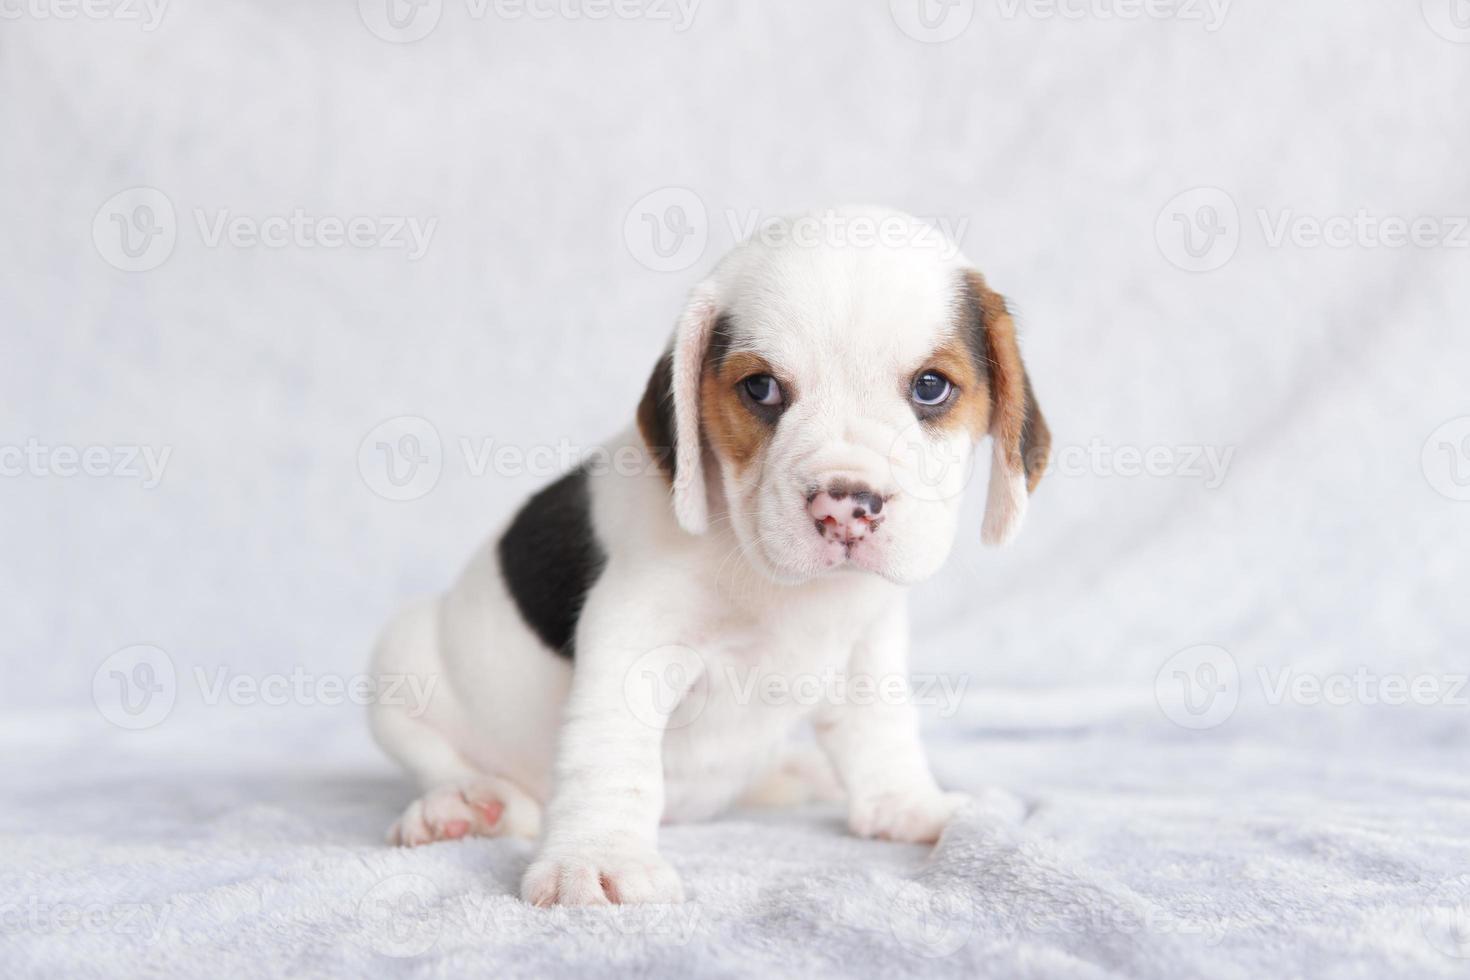 a aparência geral do beagle lembra um foxhound em miniatura. O beagle foi desenvolvido principalmente para caçar lebres. possuindo um grande olfato e instintos de rastreamento superiores. foto